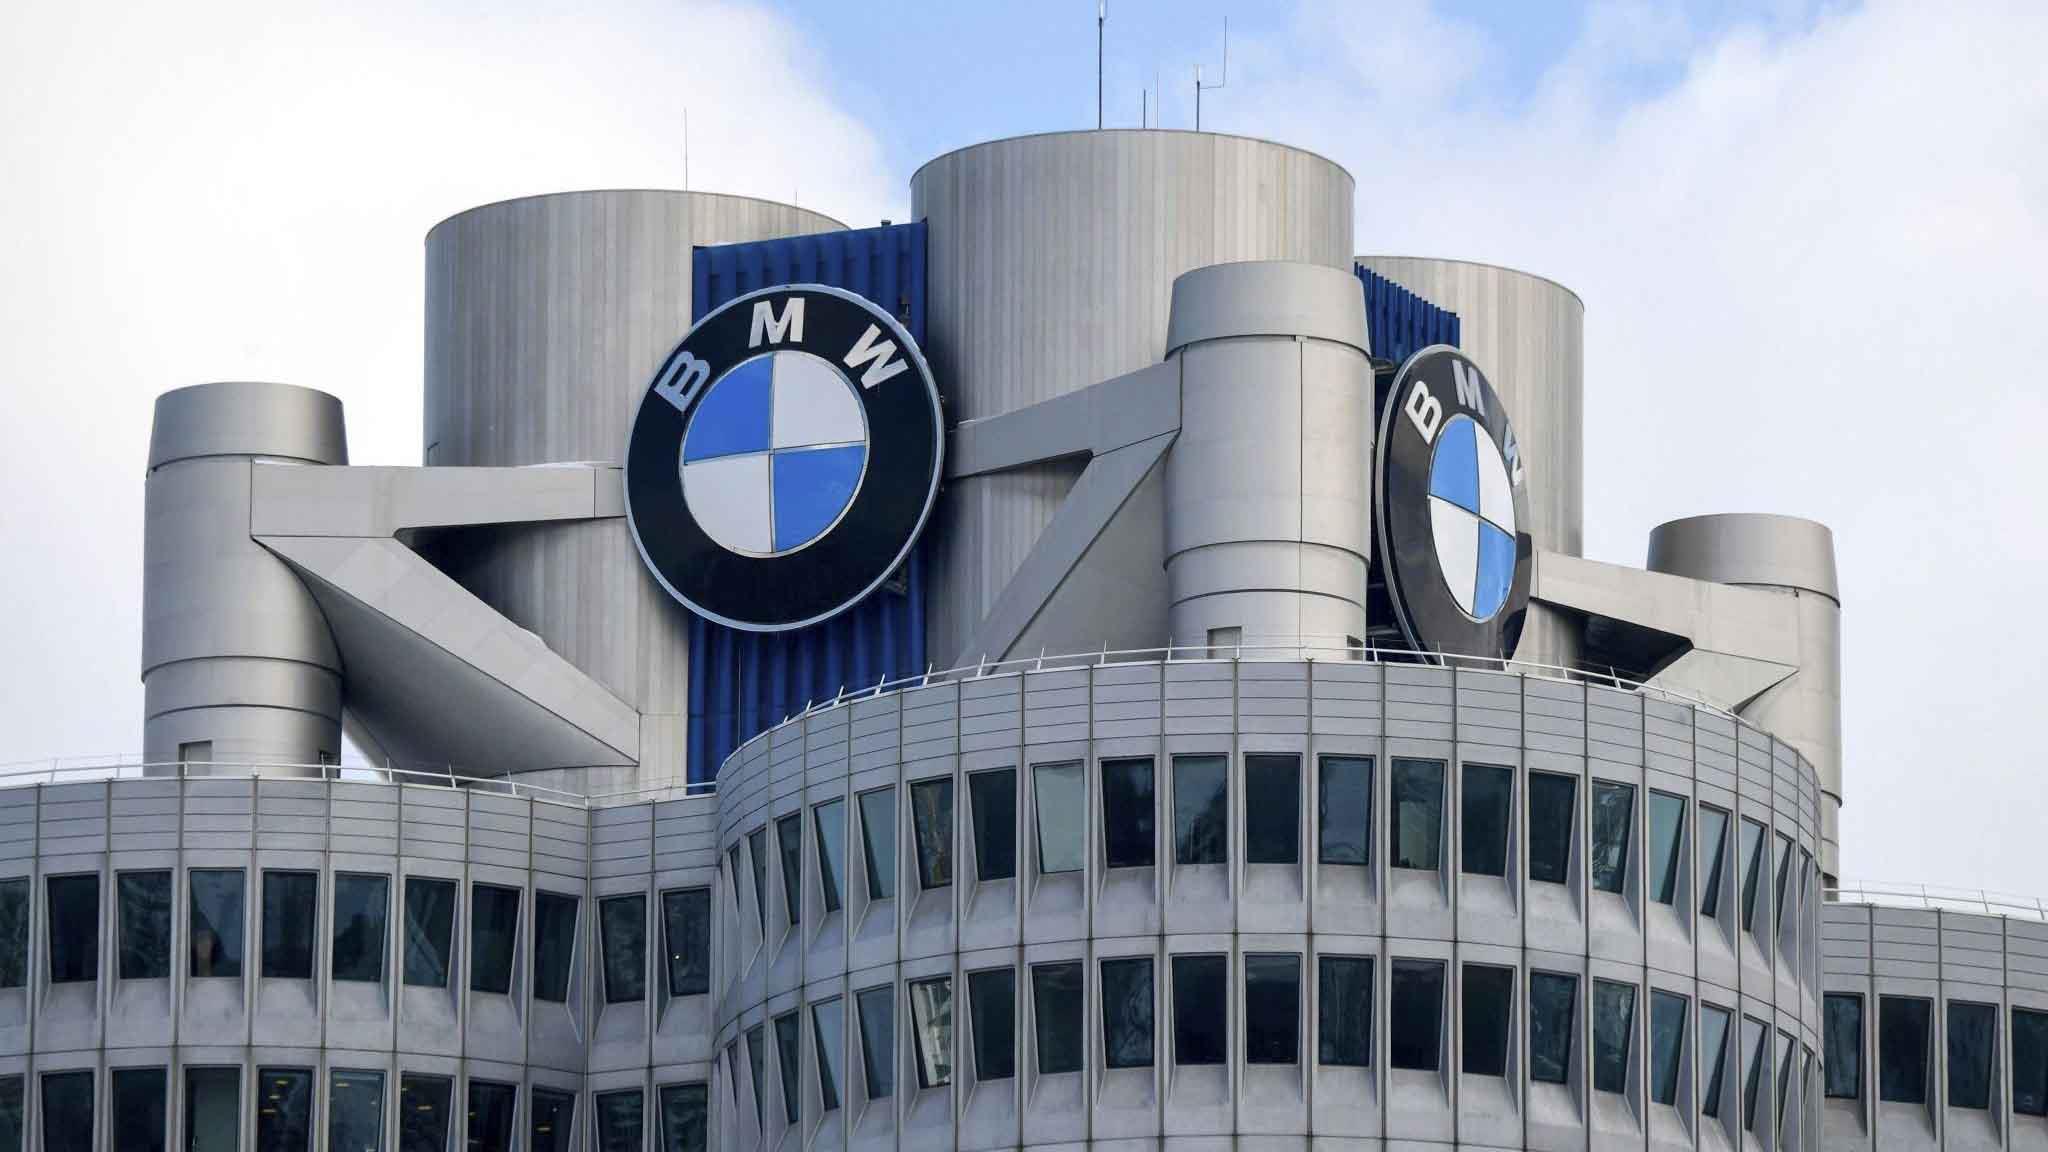 2 مليون.. الزيادة الأولى لعلامة BMW بعد شهرين من ع